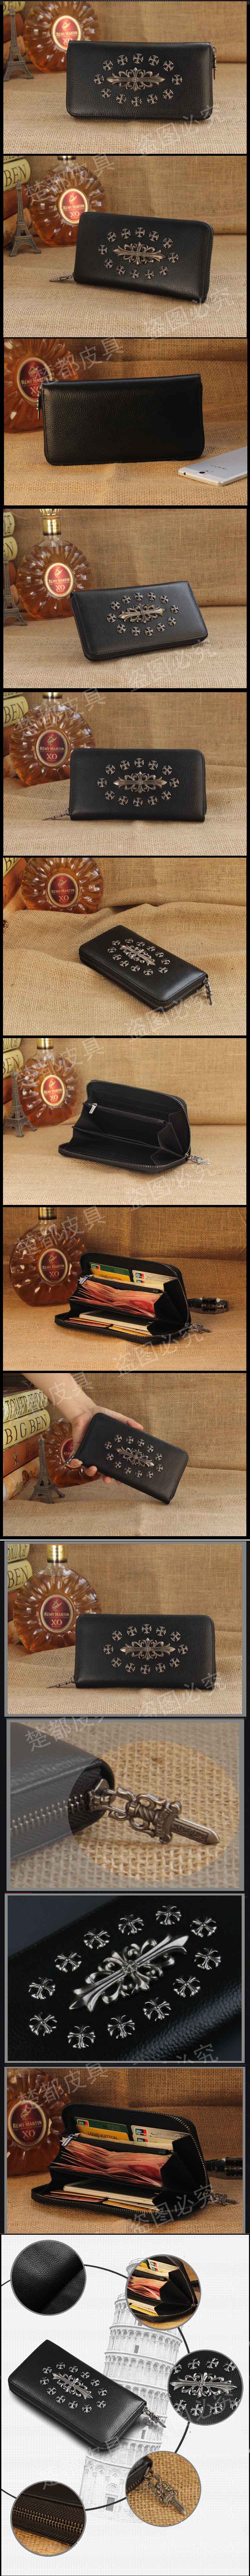 jual dompet clutch pria keren cocok untuk memaksimalkan penampilan anda, temukan koleksi dompet clutch pria terlengkap lain nya hanya di pfp store